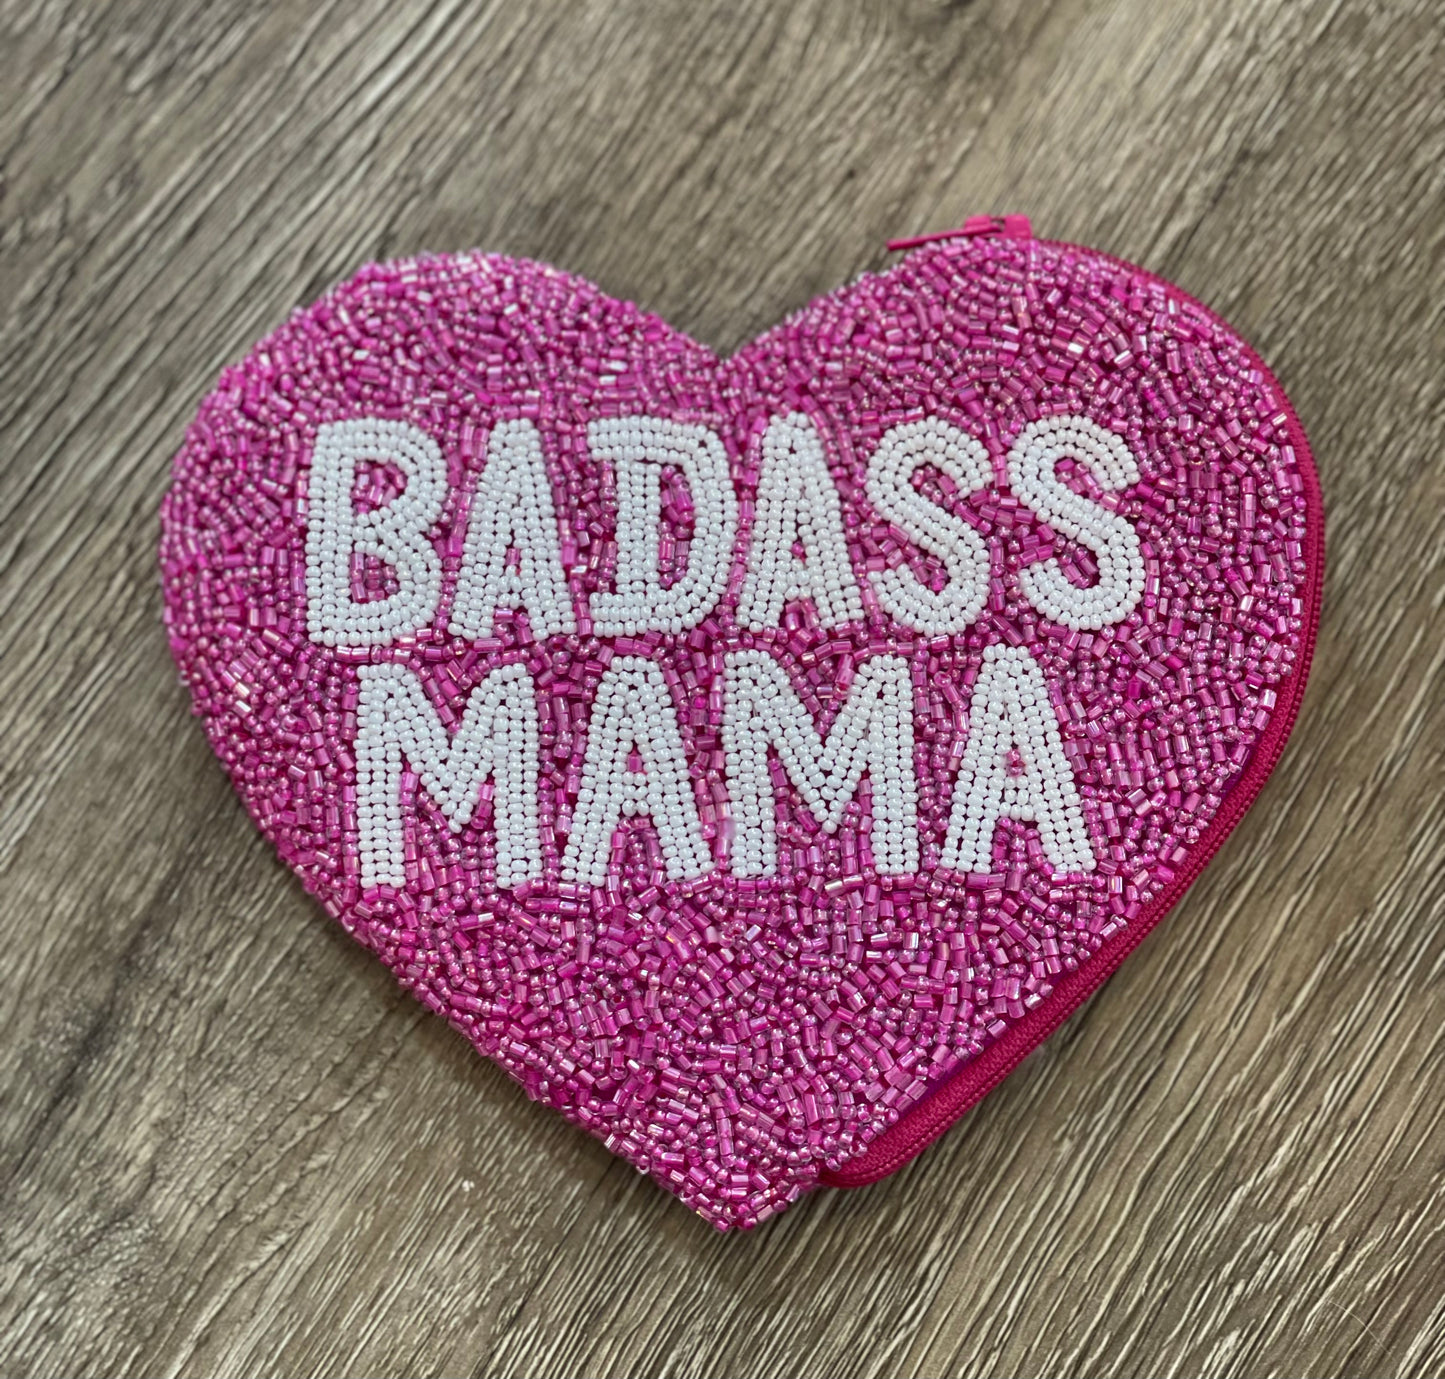 Badass Mama Heart Shape Coin Purse